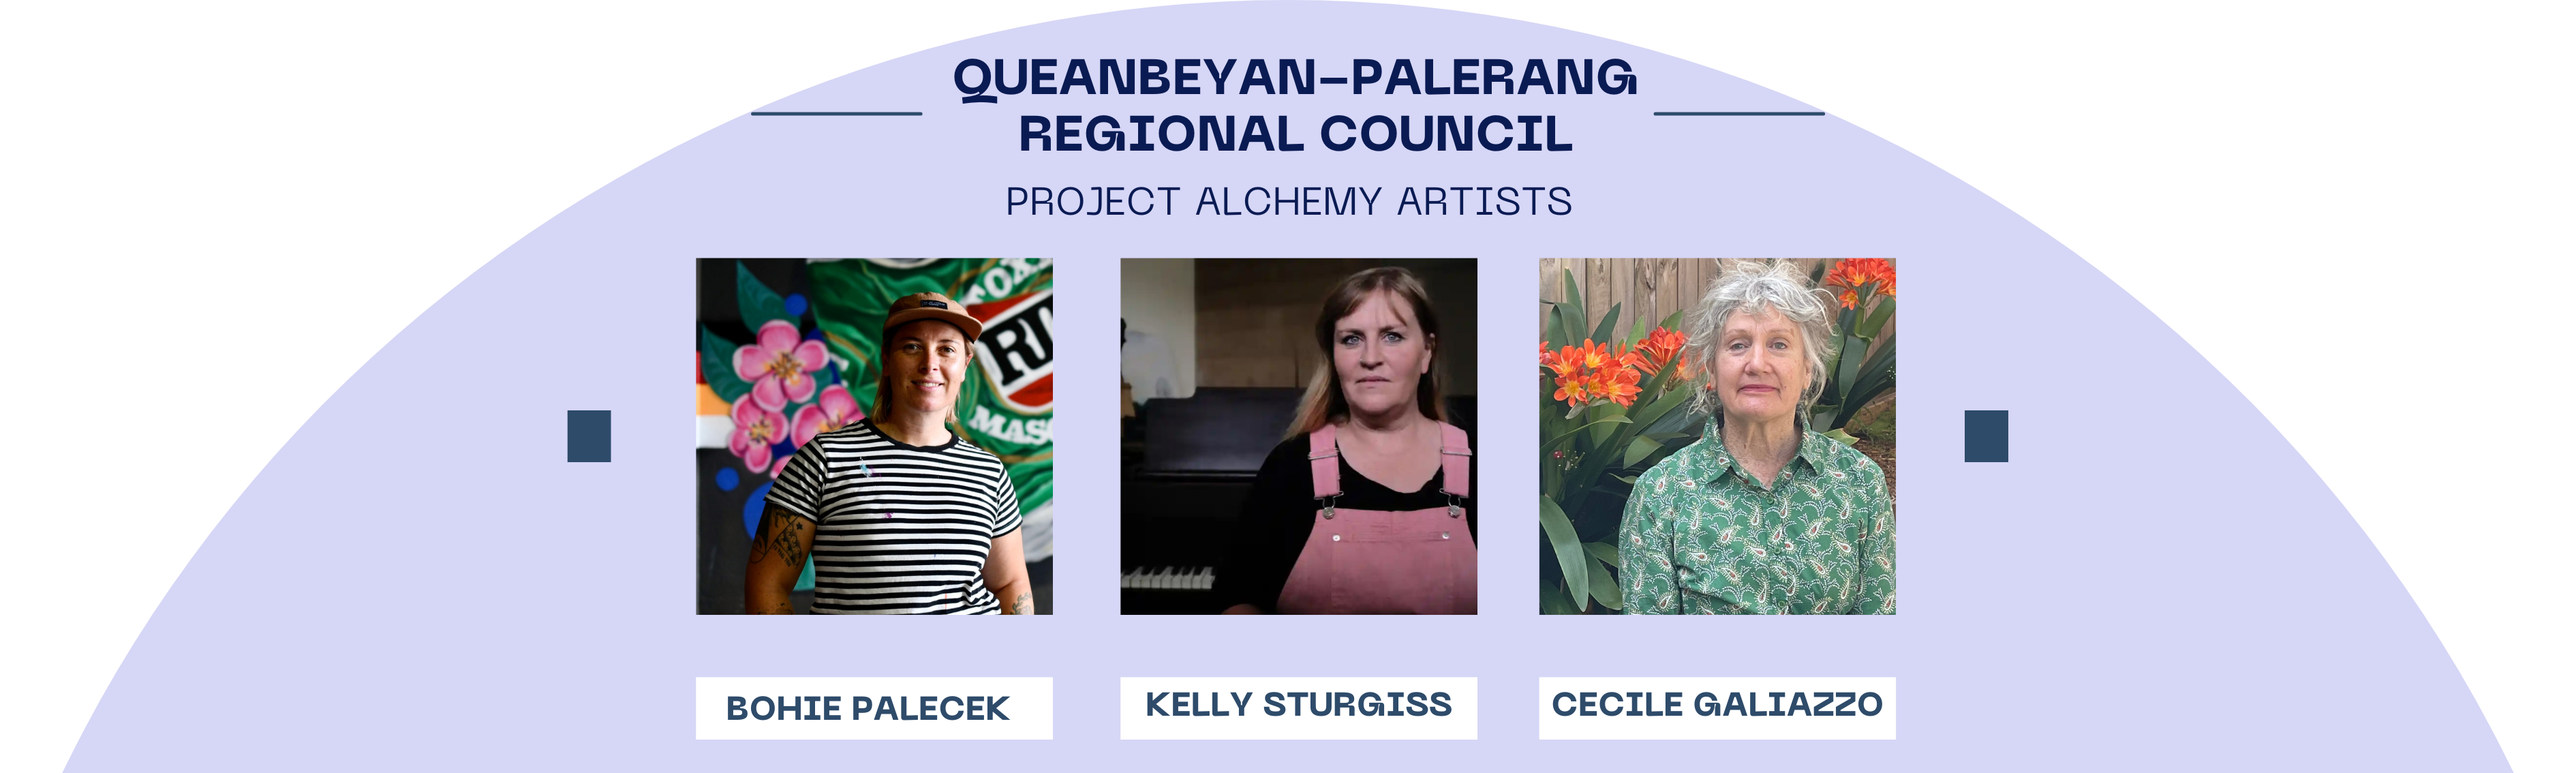 Queanbeyan-Palerang Regional Council Project Alchemy Artists